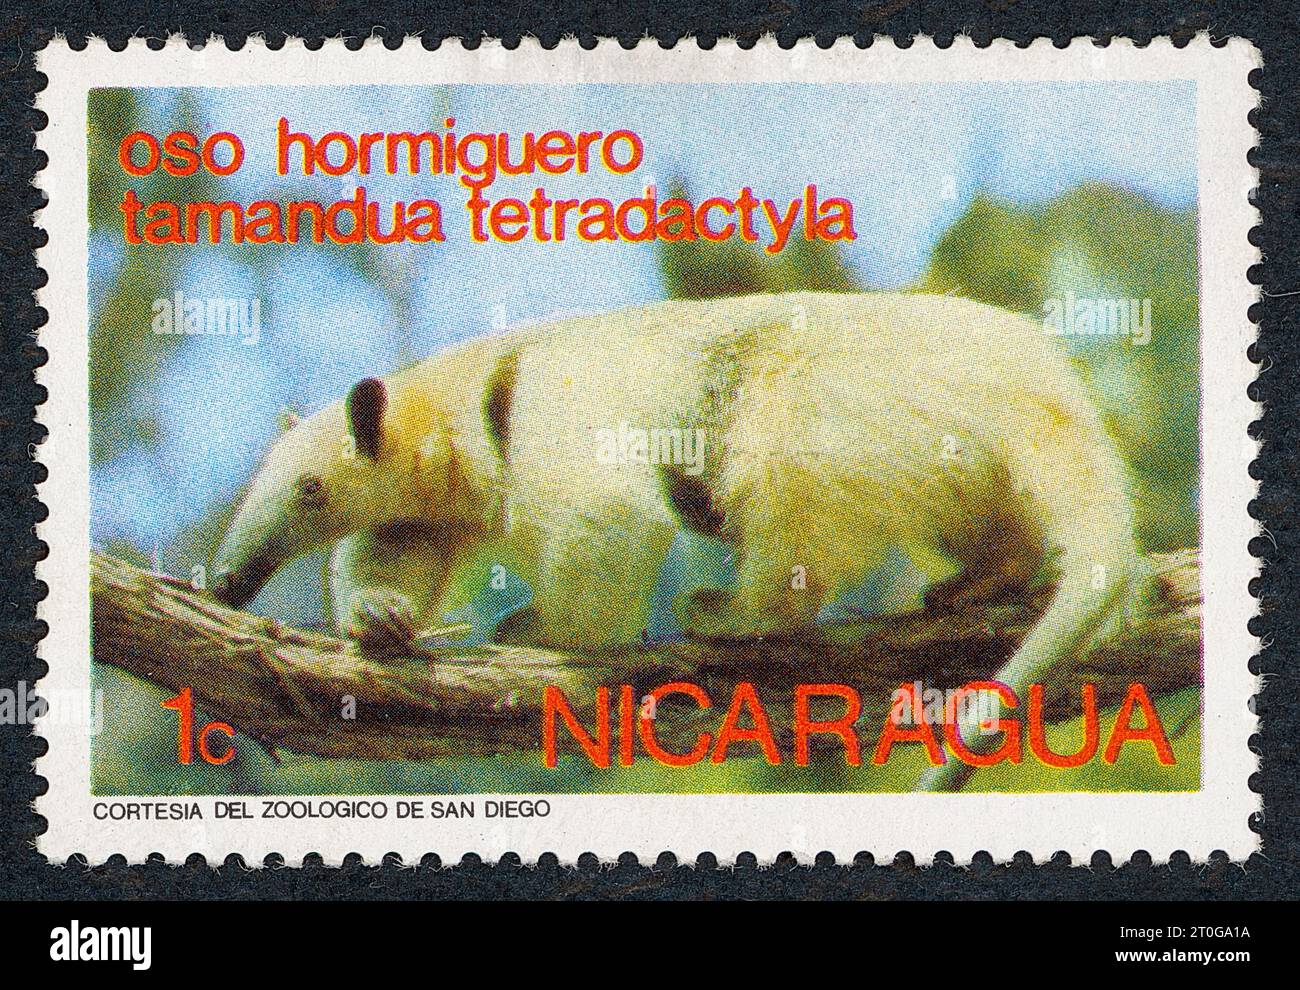 Le tamandua méridional (Tamandua tetradactyla), également appelé fourmière à col ou fourmière moindre. Timbre-poste émis au Nicaragua en 1974. Banque D'Images